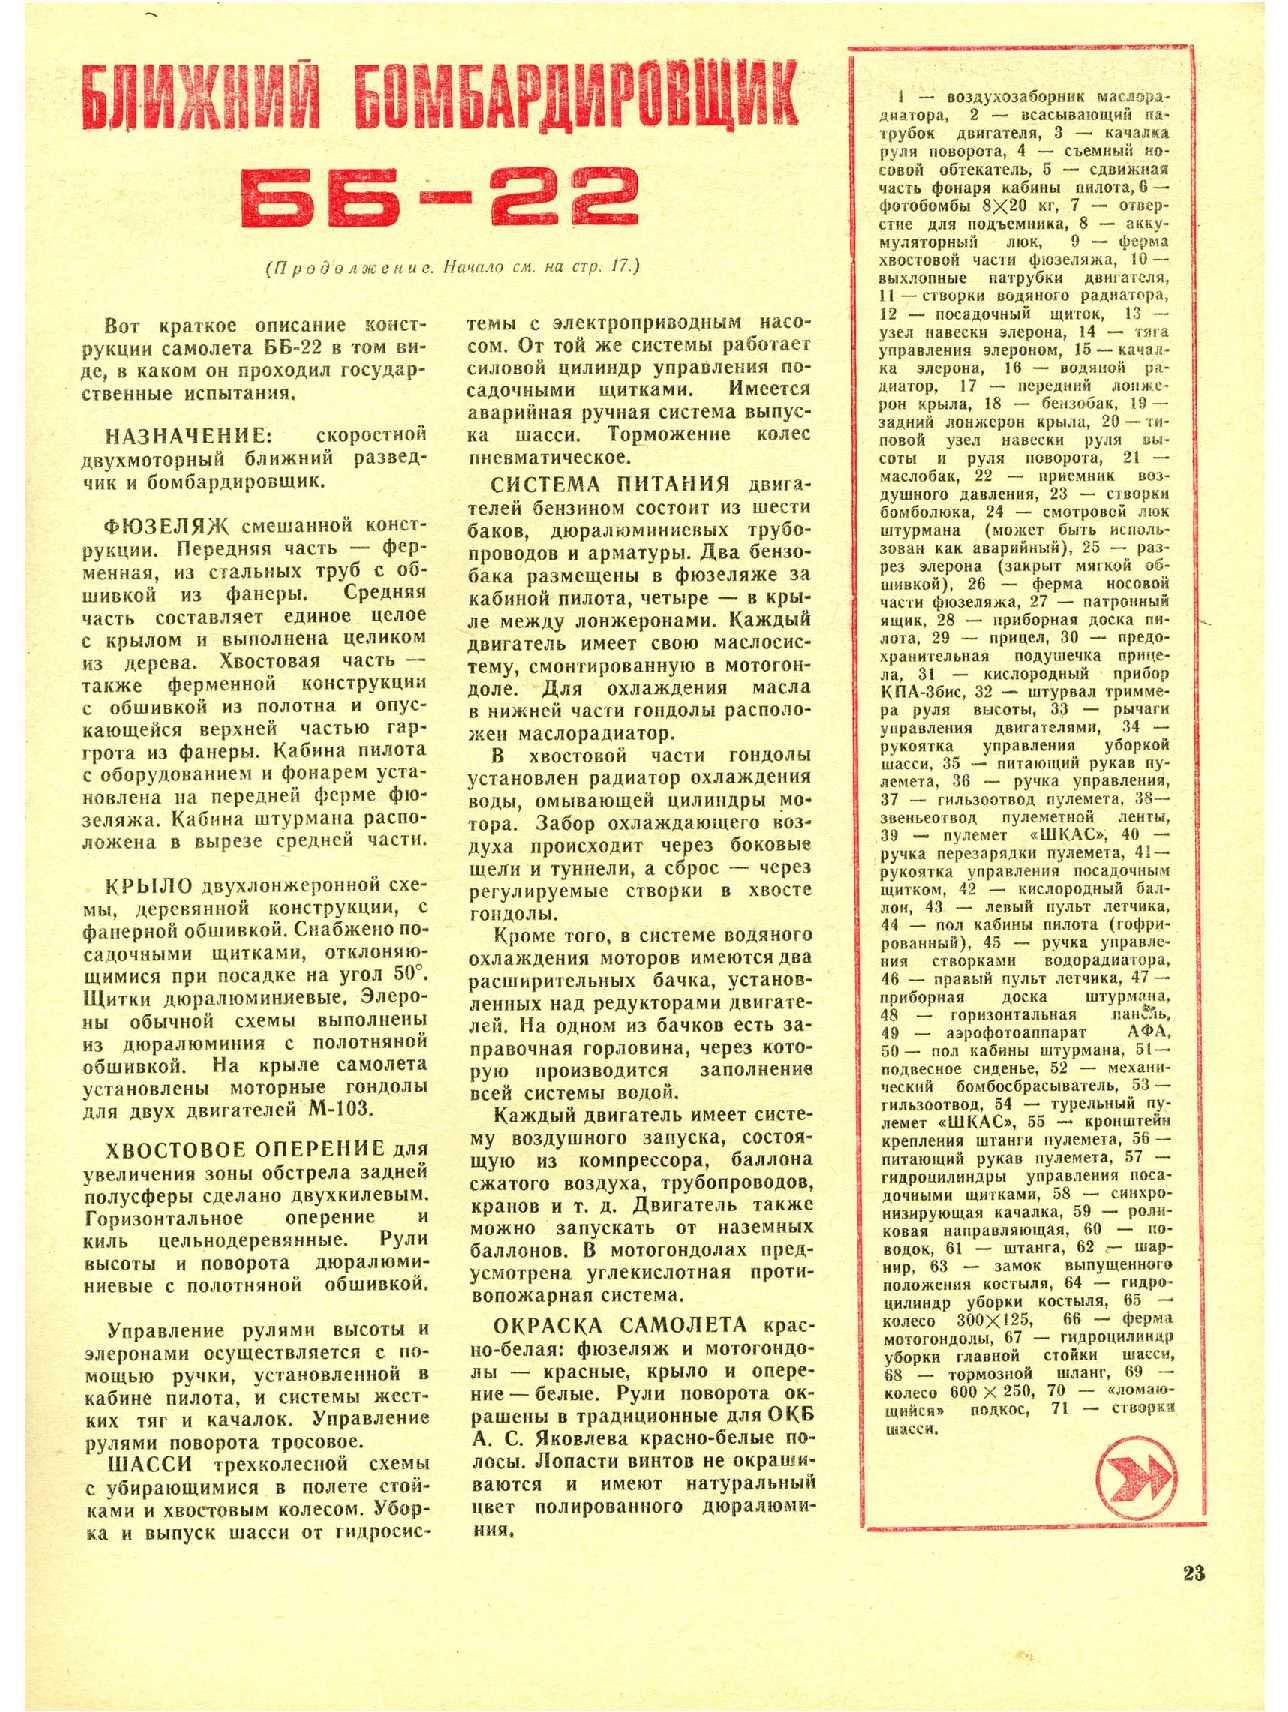 МК 10, 1975, 23 c.